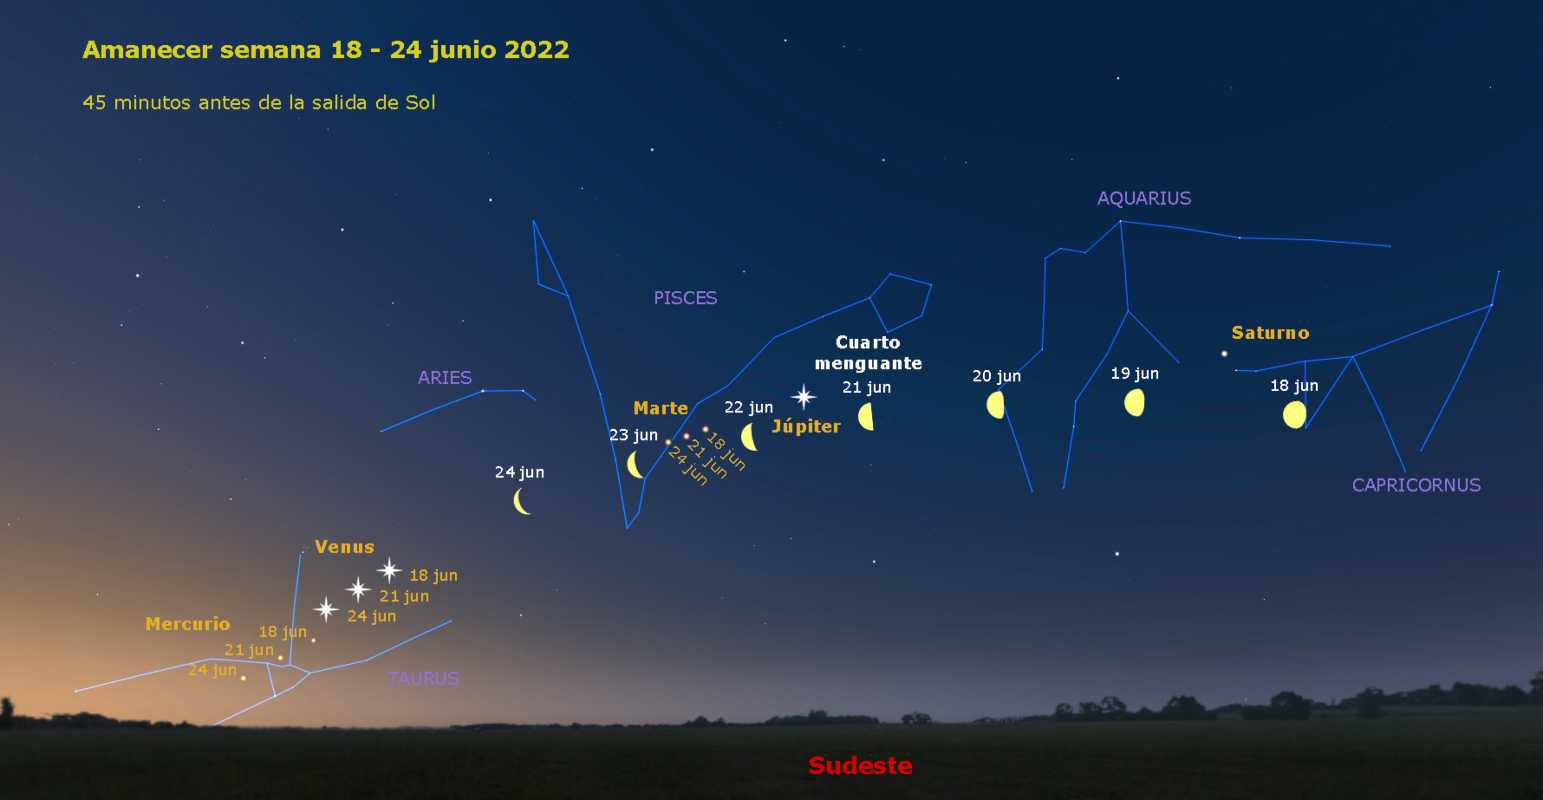 Justo antes del amanecer cinco planetas estarán alineados, incluso con la Luna el día 24. Foto: Real Observatorio Astronómico de Madrid, Instituto Geográfico Nacional.